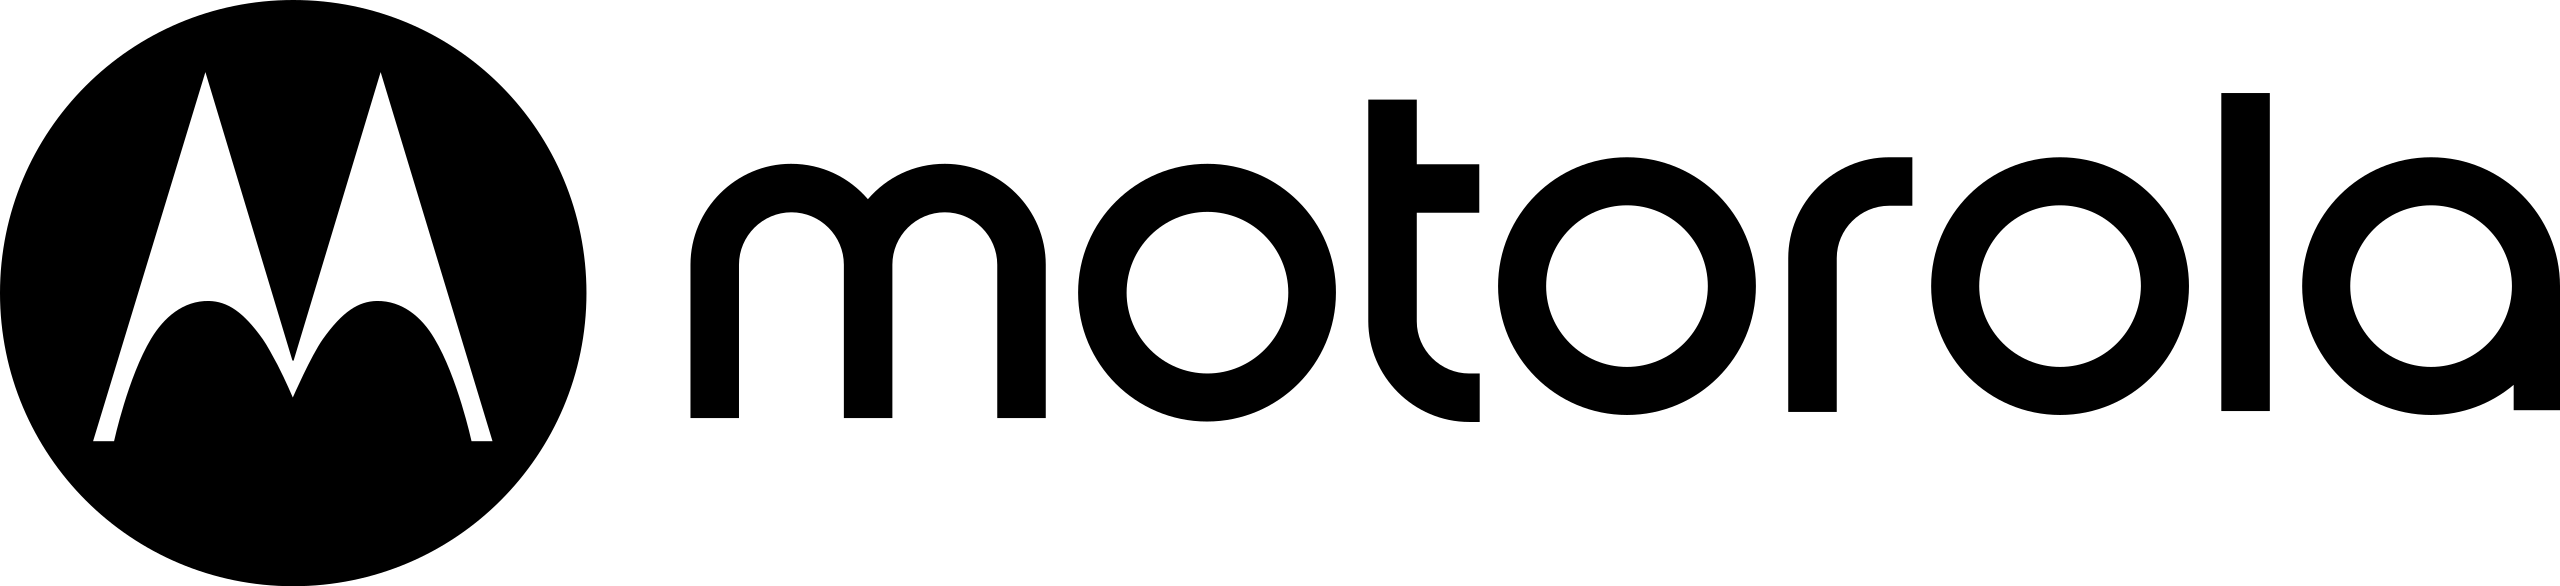 Motorola Logo PNG Photo Image